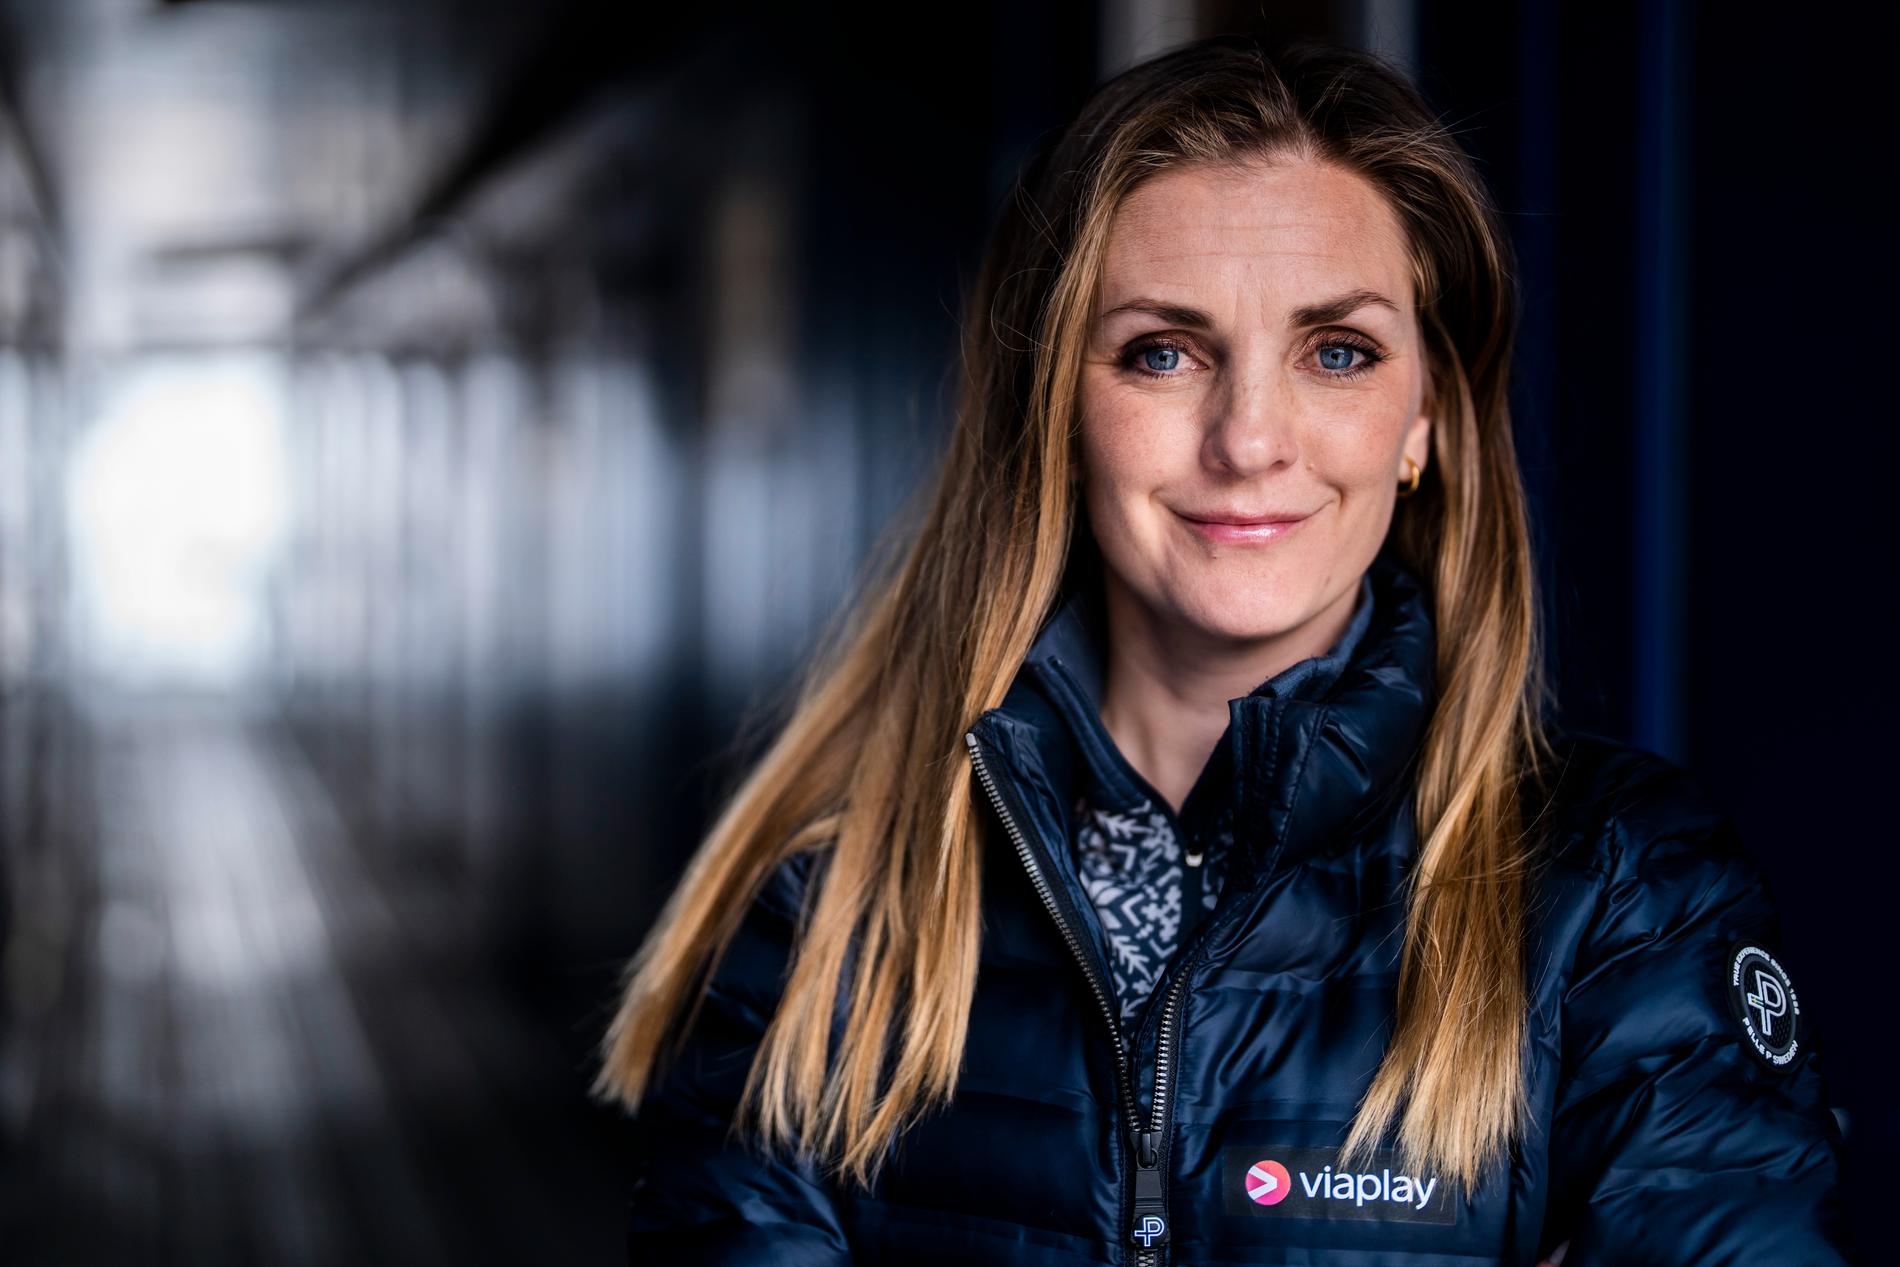 Johanna Ojala är kanske mest känd som skidexpert i tv, numera på Viaplay.